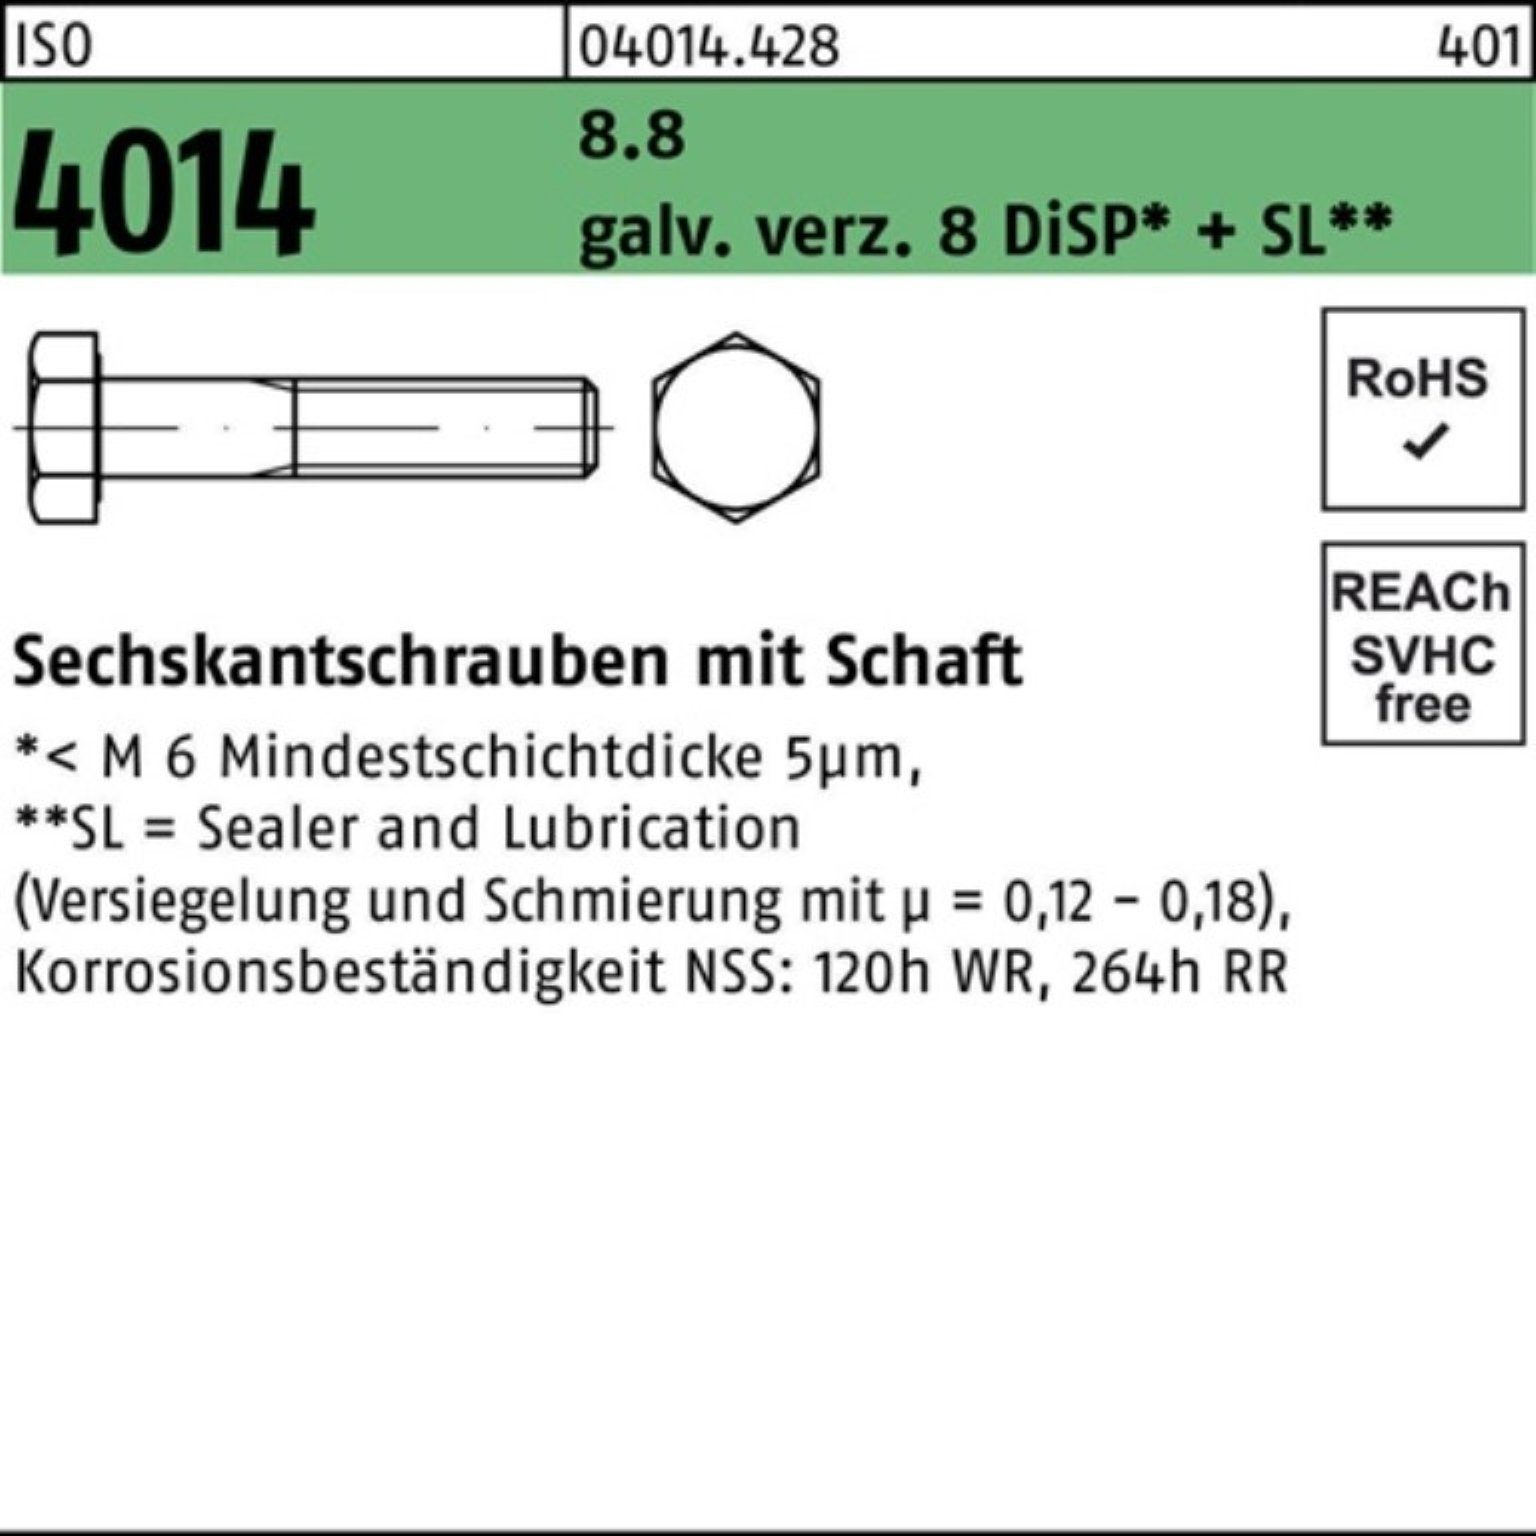 Bufab Sechskantschraube 100er Pack Sechskantschraube ISO 4014 Schaft M24x180 8.8 galv.verz. 8